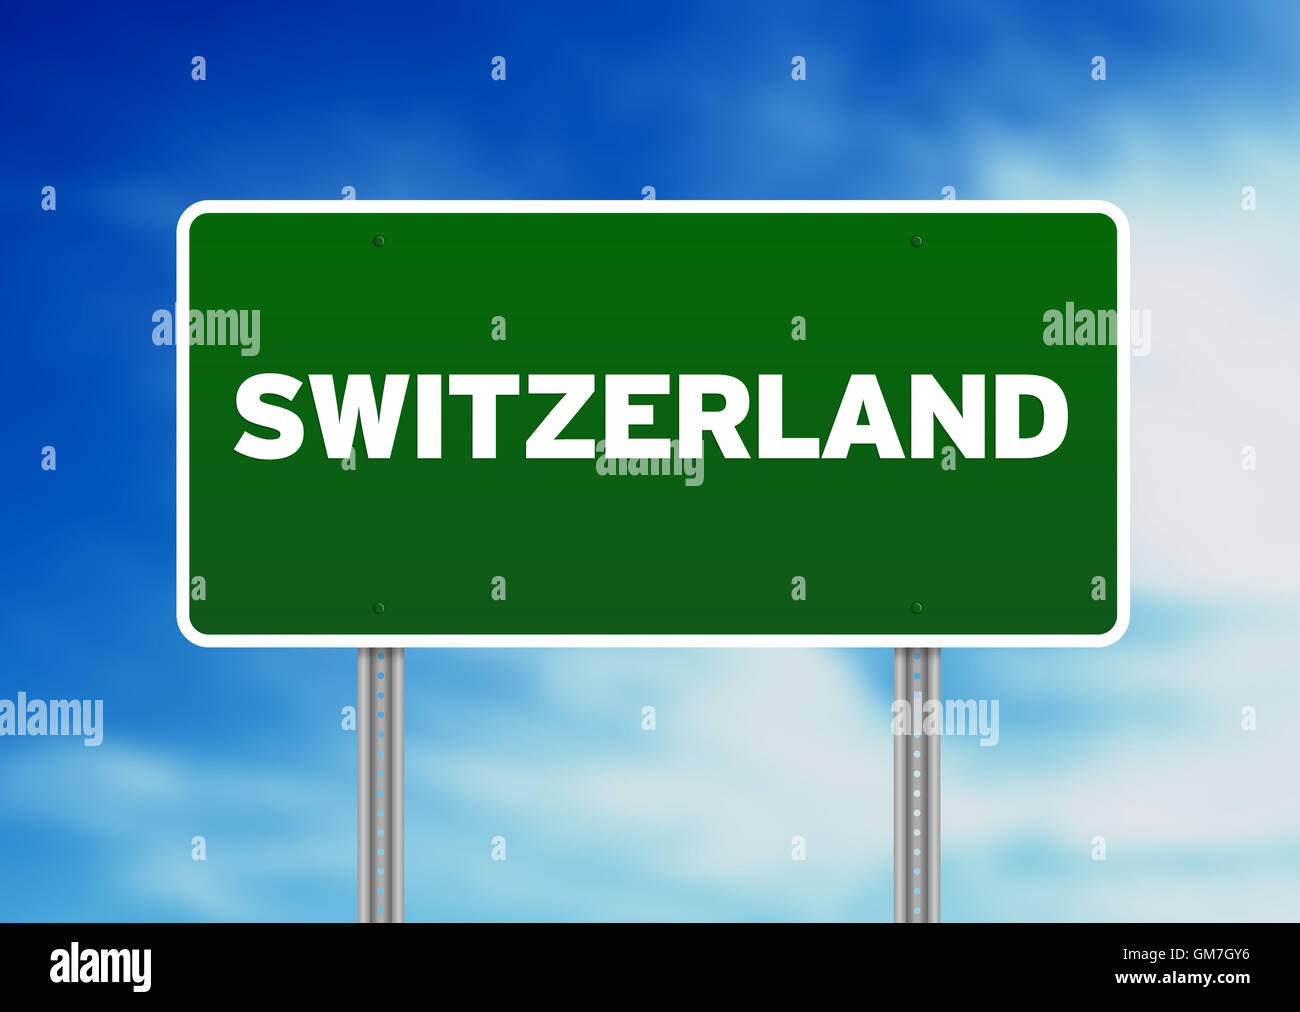 Schweiz Autobahn Zeichen Stockfotografie - Alamy